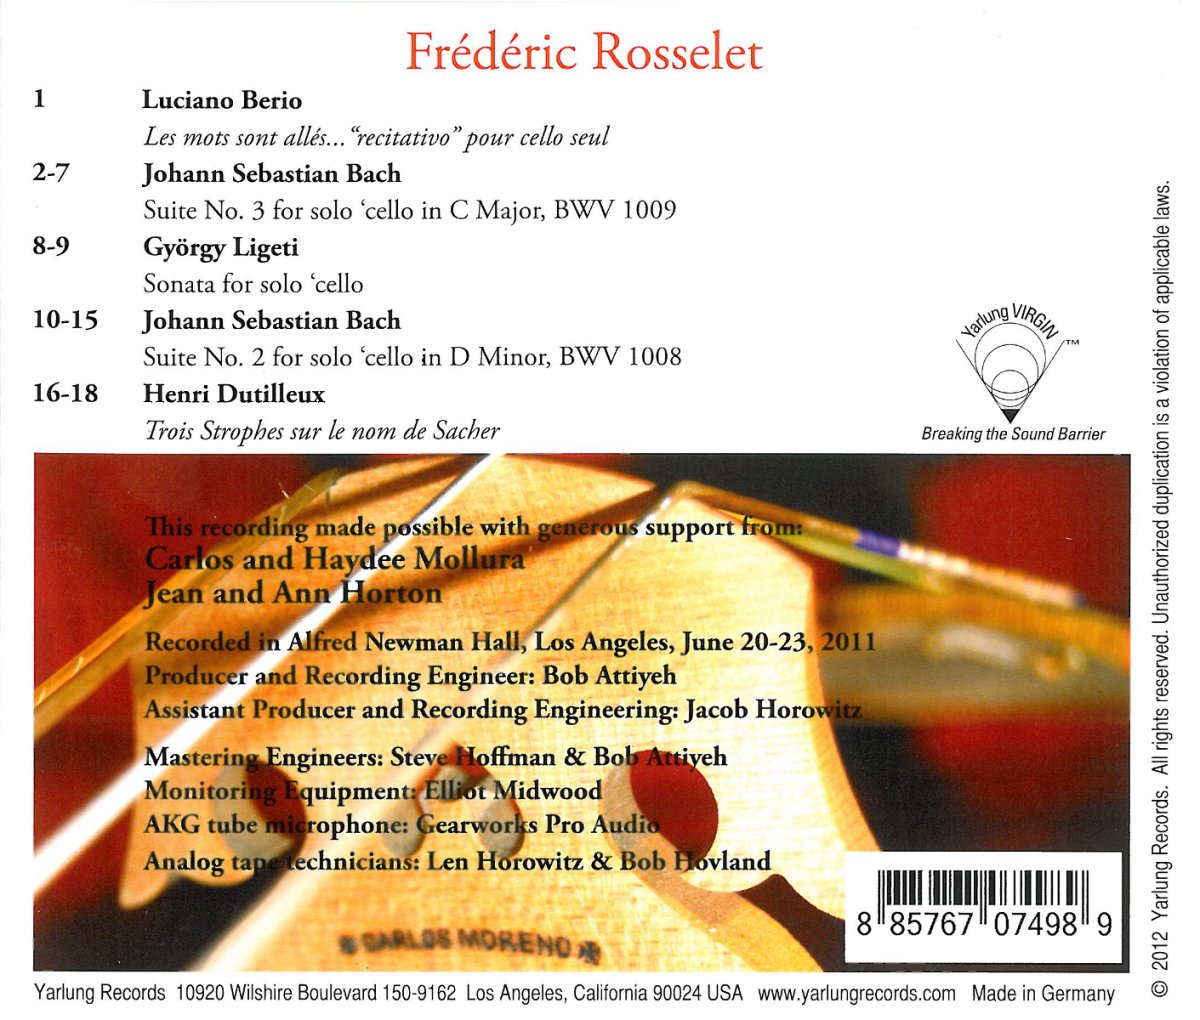 Frederic Rosselet 바흐: 첼로 모음곡 2, 3번 / 베리오: 말은 사라지고 (J.S.Bach: Cello Suites BWV1008, 1009 / Berio: Les mots sont alles for Cello solo) 